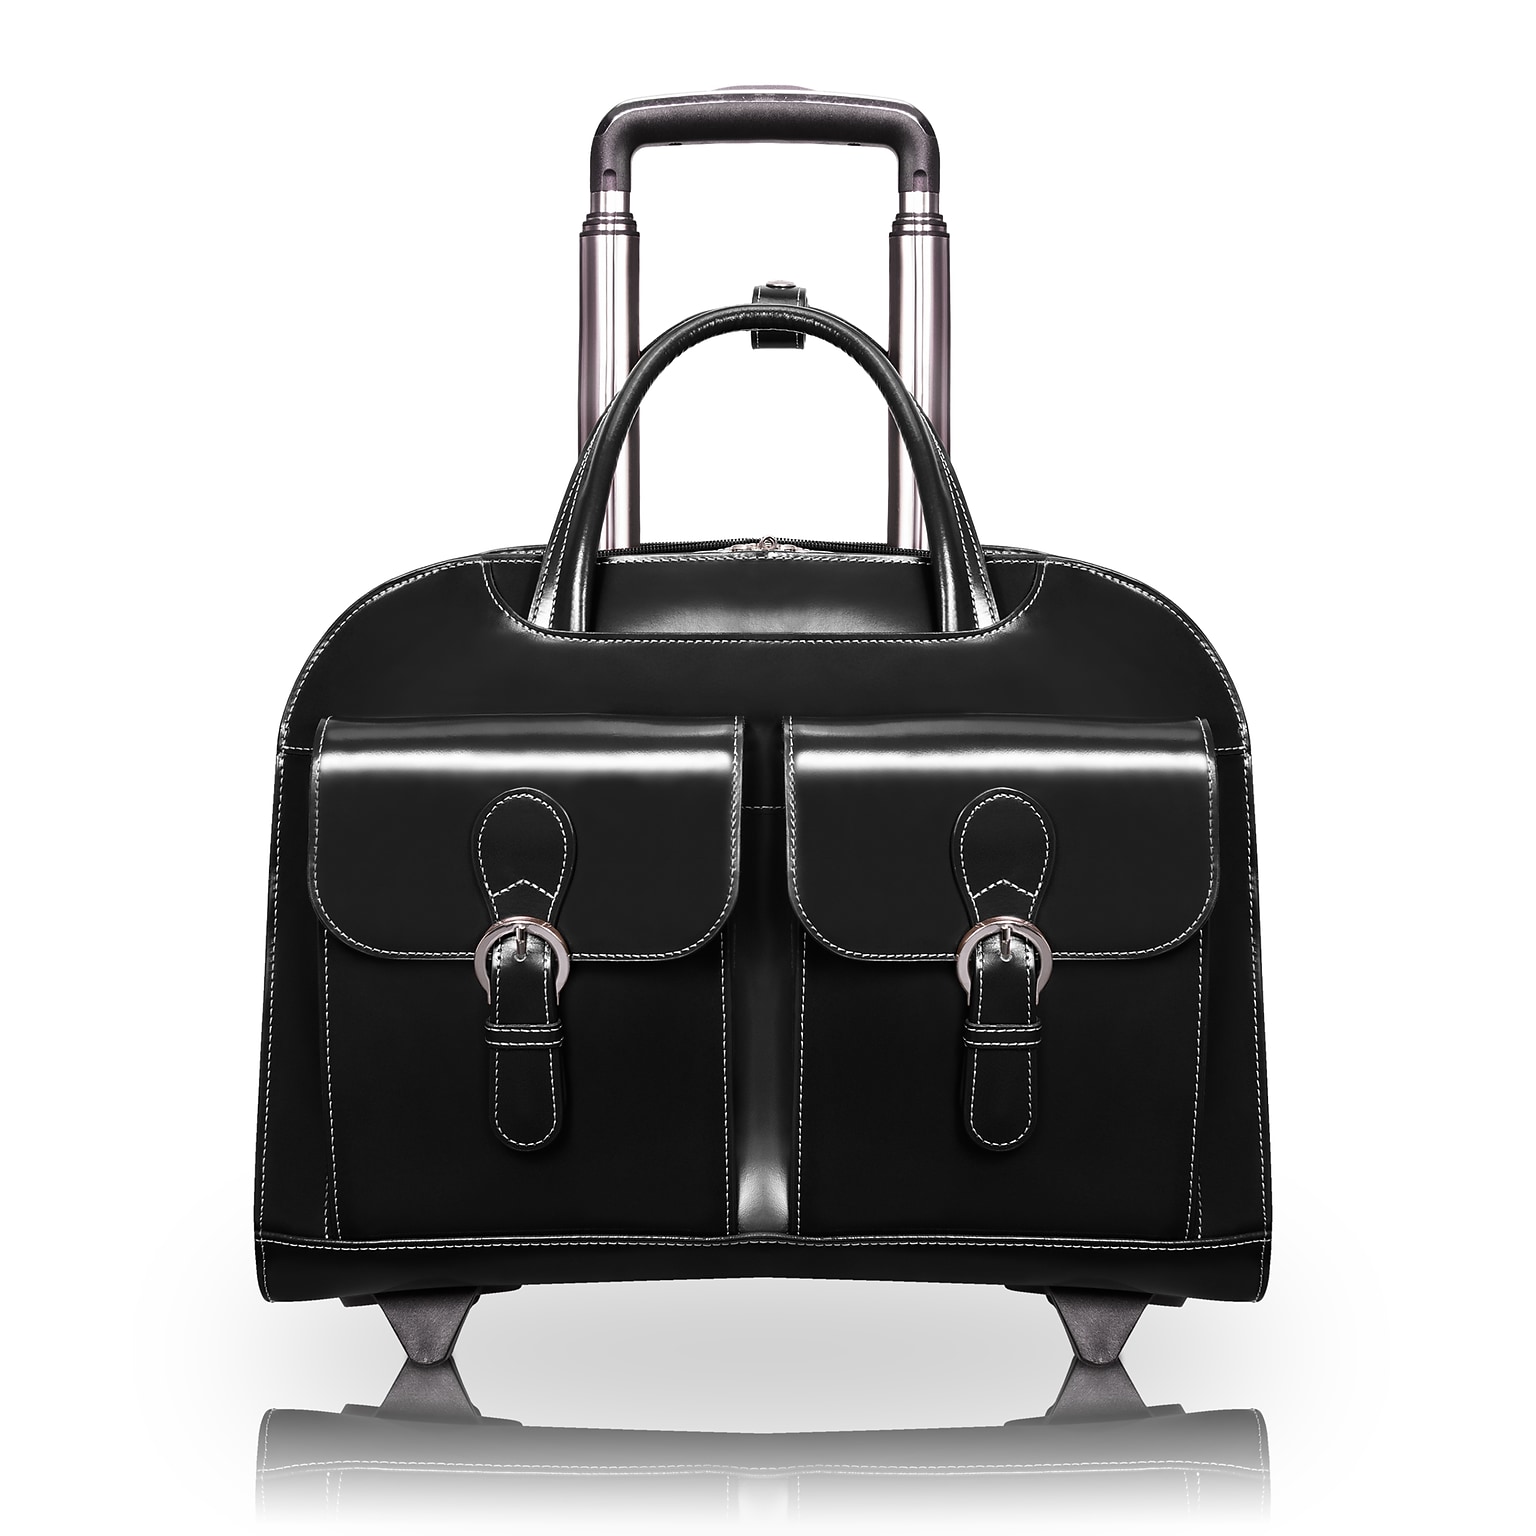 McKlein W Series Laptop Briefcase, Black Leather (96185A)